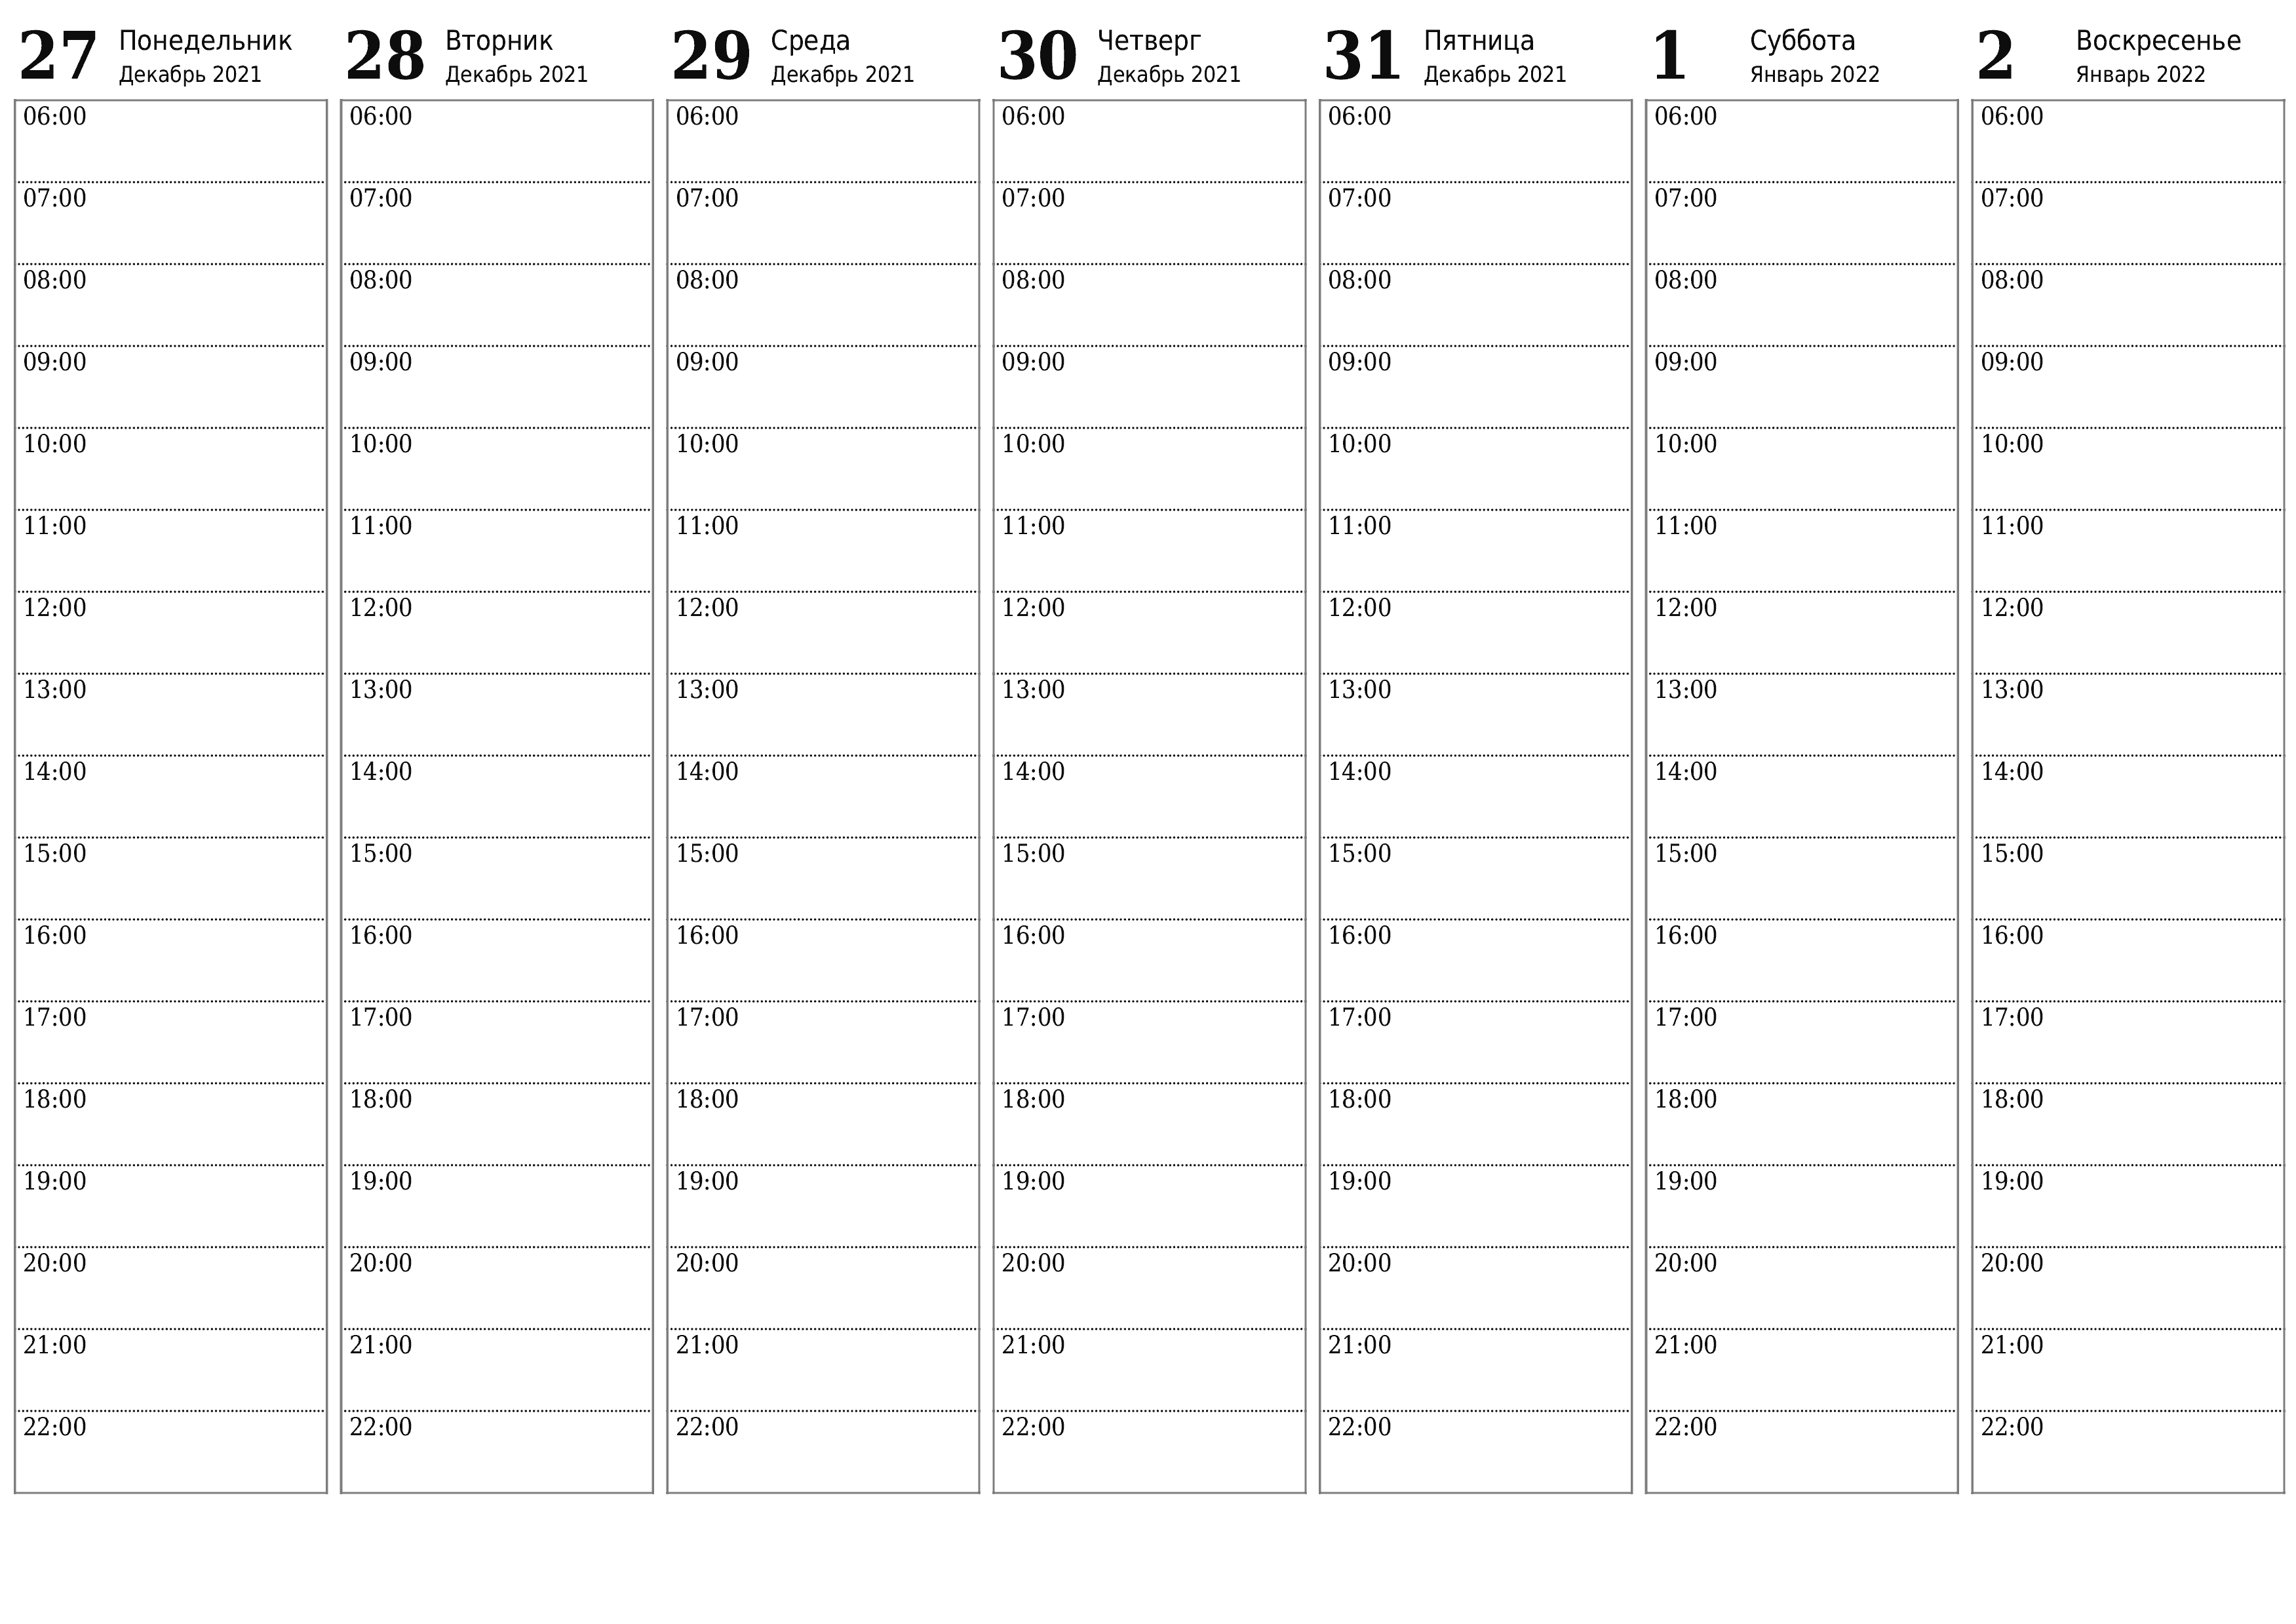 Пустой еженедельный календарь-планер на недели Январь 2022